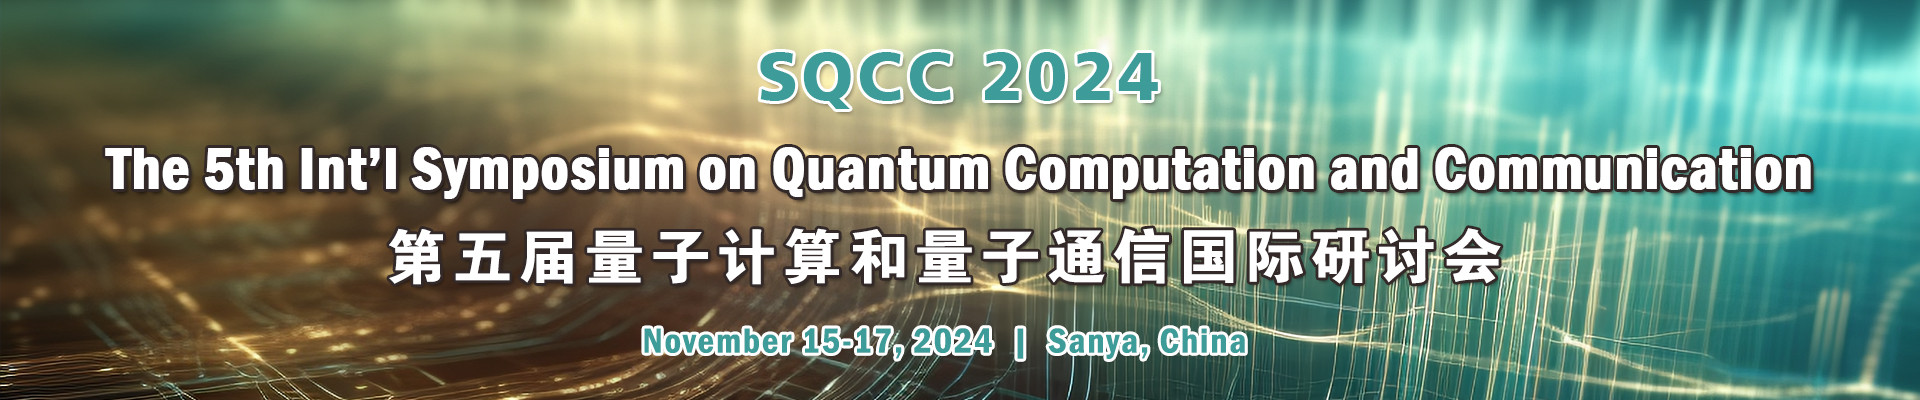 第五届量子计算与量子通信国际研讨会(SQCC 2024)